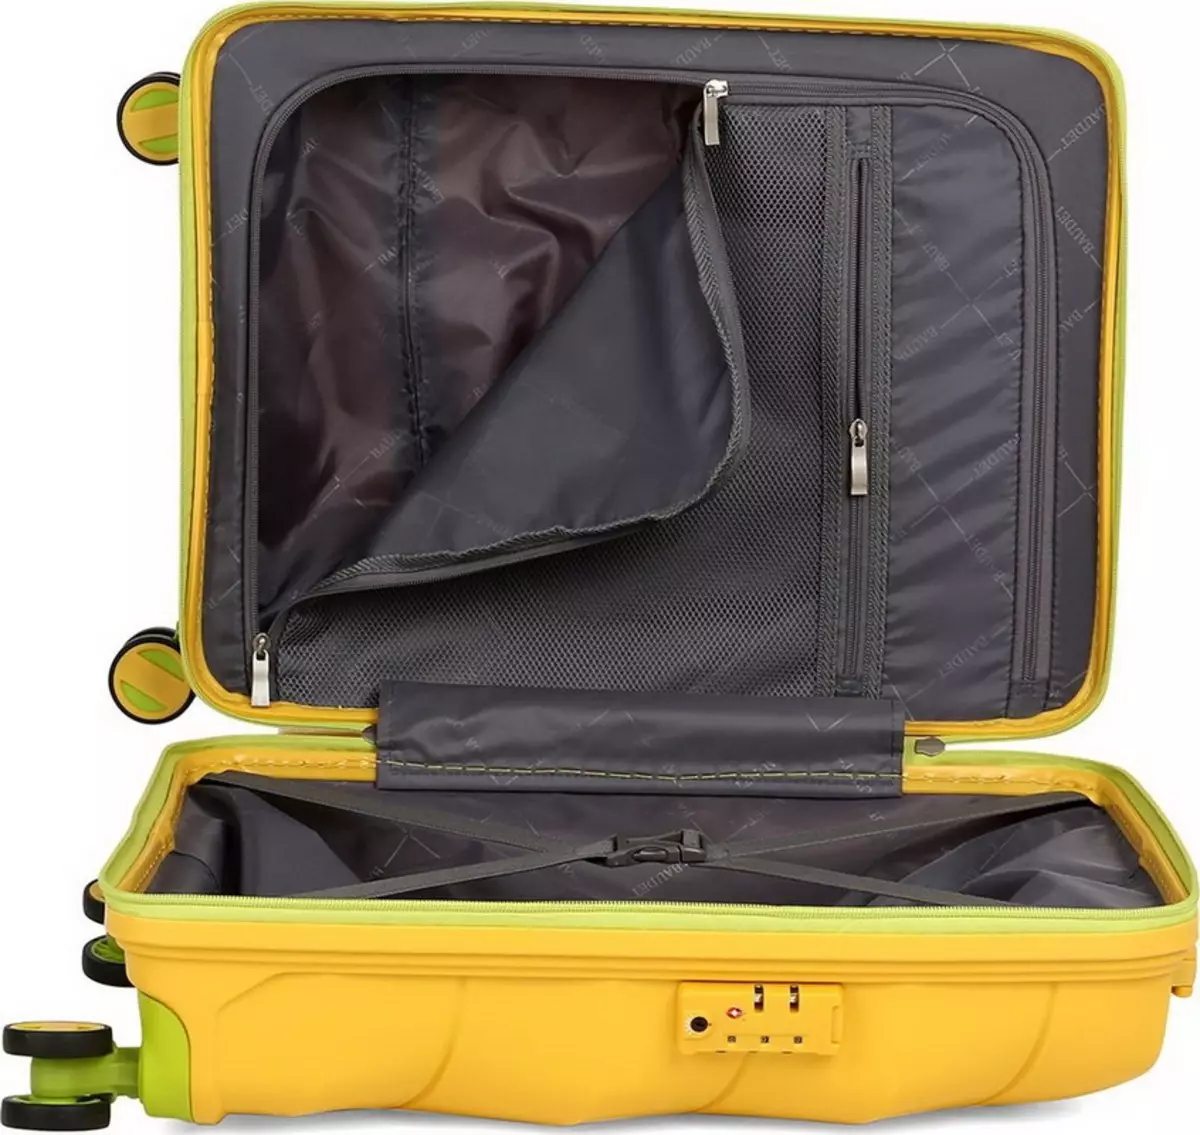 Maletes d'equipatge de mà: la seva mida a l'avió, petites maletes 55x40x20 sobre rodes i altres, qualificació dels millors models de llum 13627_33